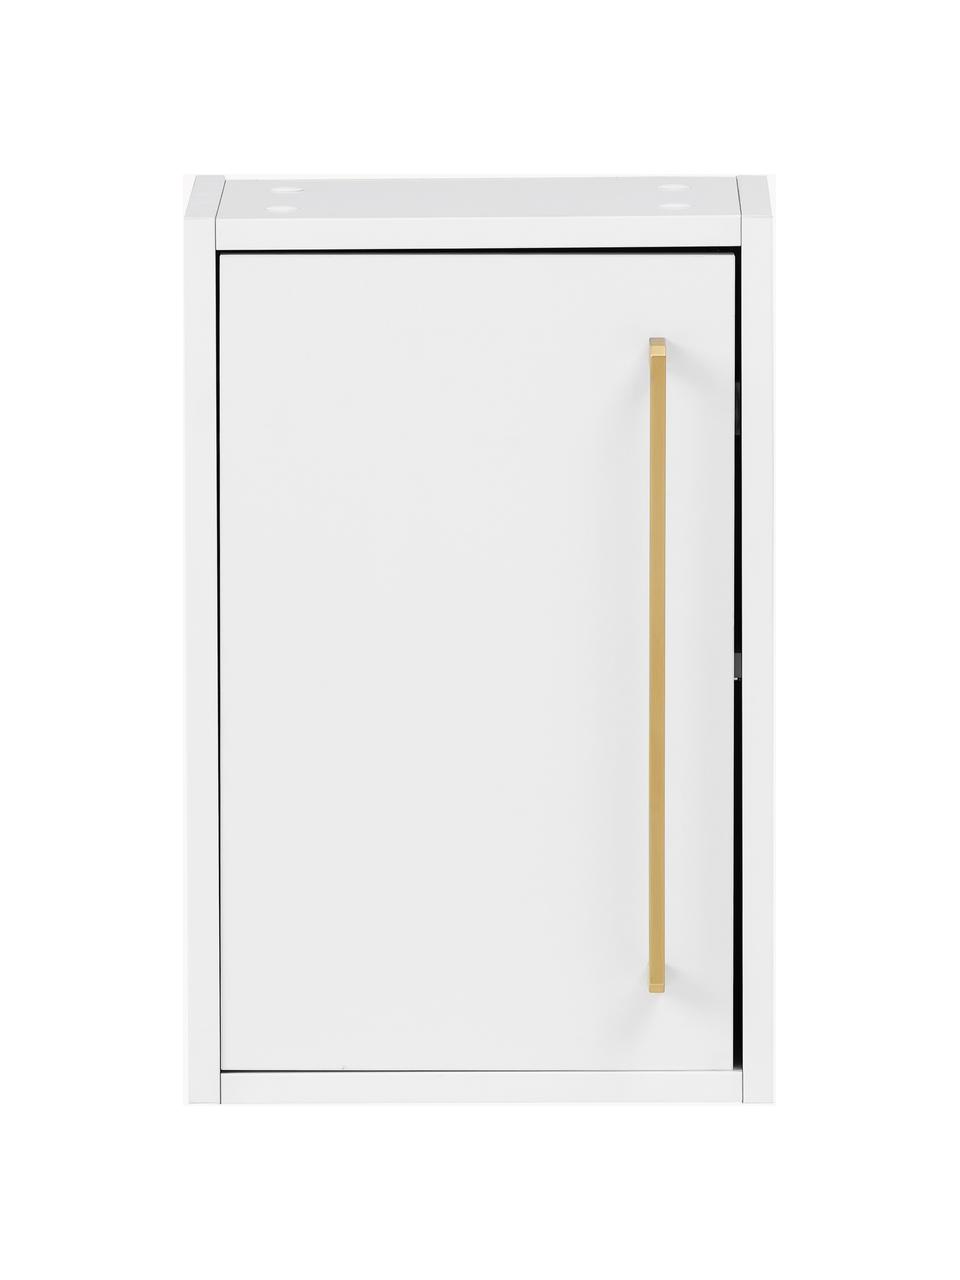 Bad-Hängeschrank Palladia, B 30 cm, Griff: Metall, beschichtet, Weiß, Goldfarben, B 30 x H 46 cm